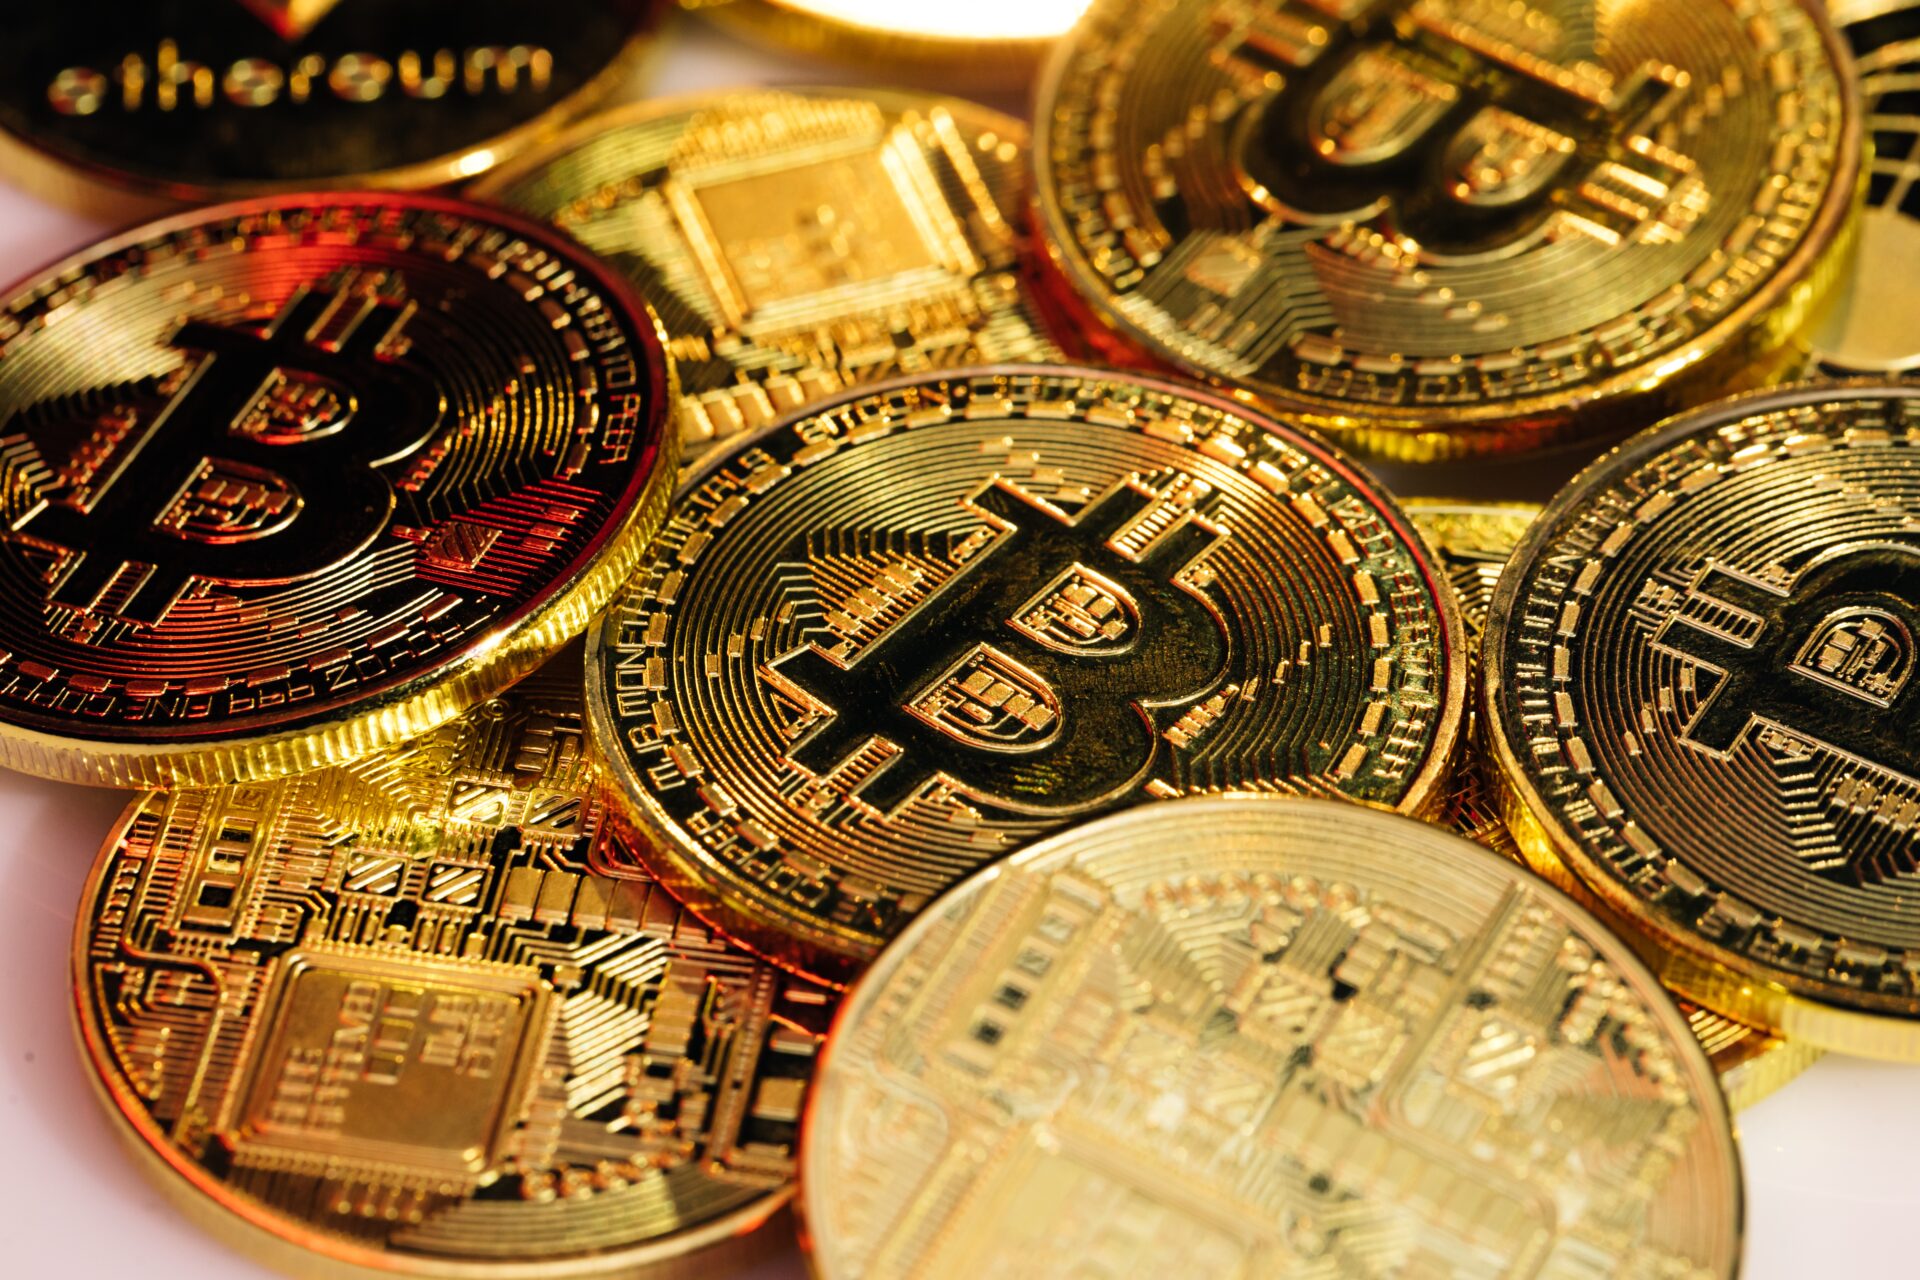 La Centrafrique adopte le Bitcoin comme monnaie légale